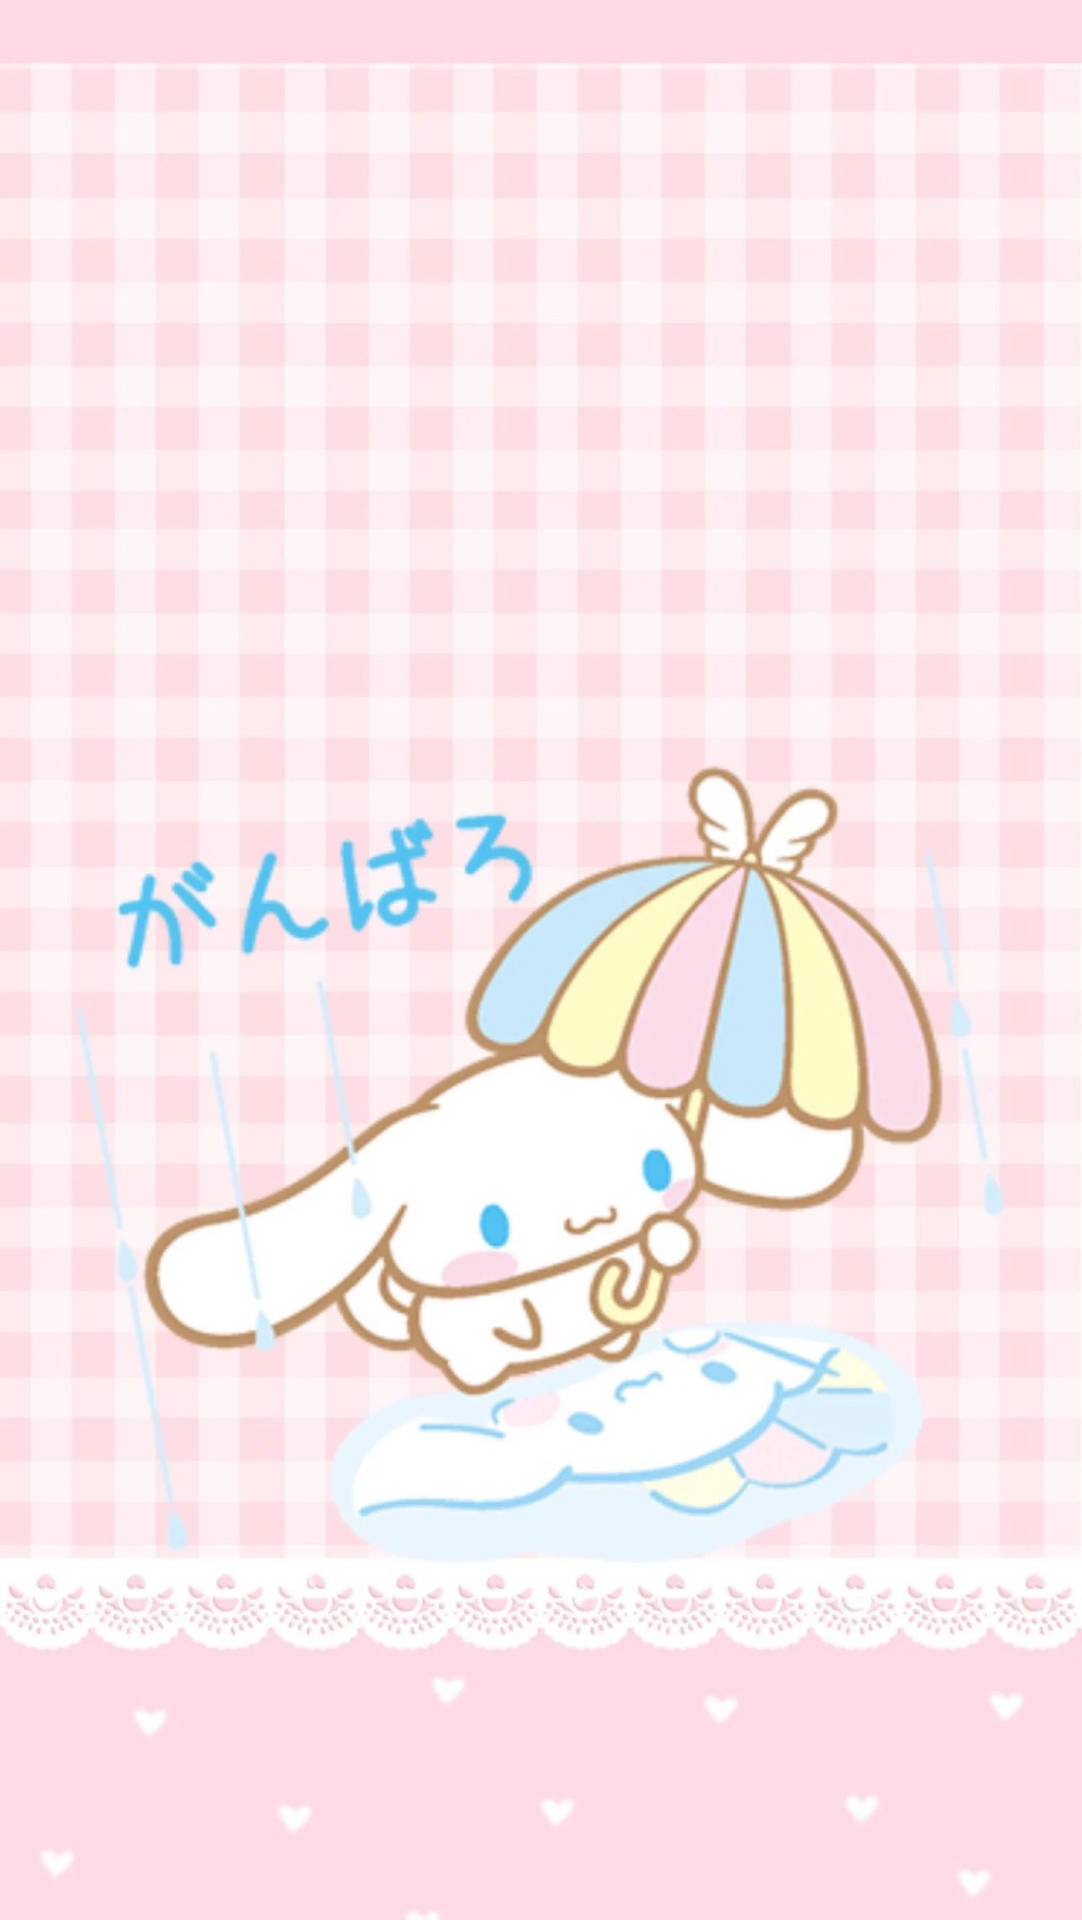 Pastel Cute Bunny With Umbrella